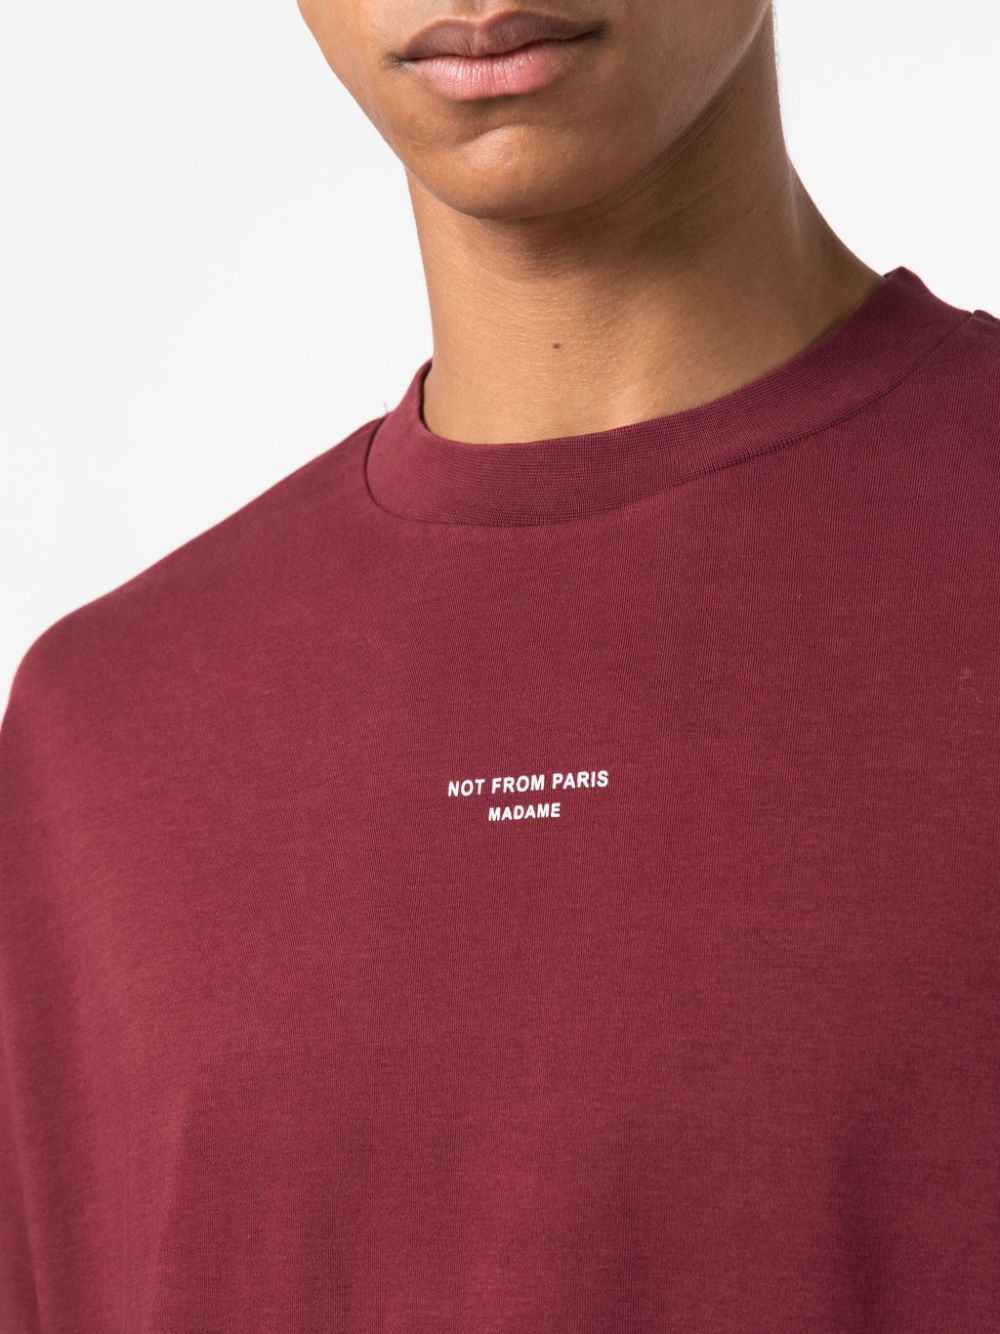 T-shirt bordeaux avec logo sur la poitrine